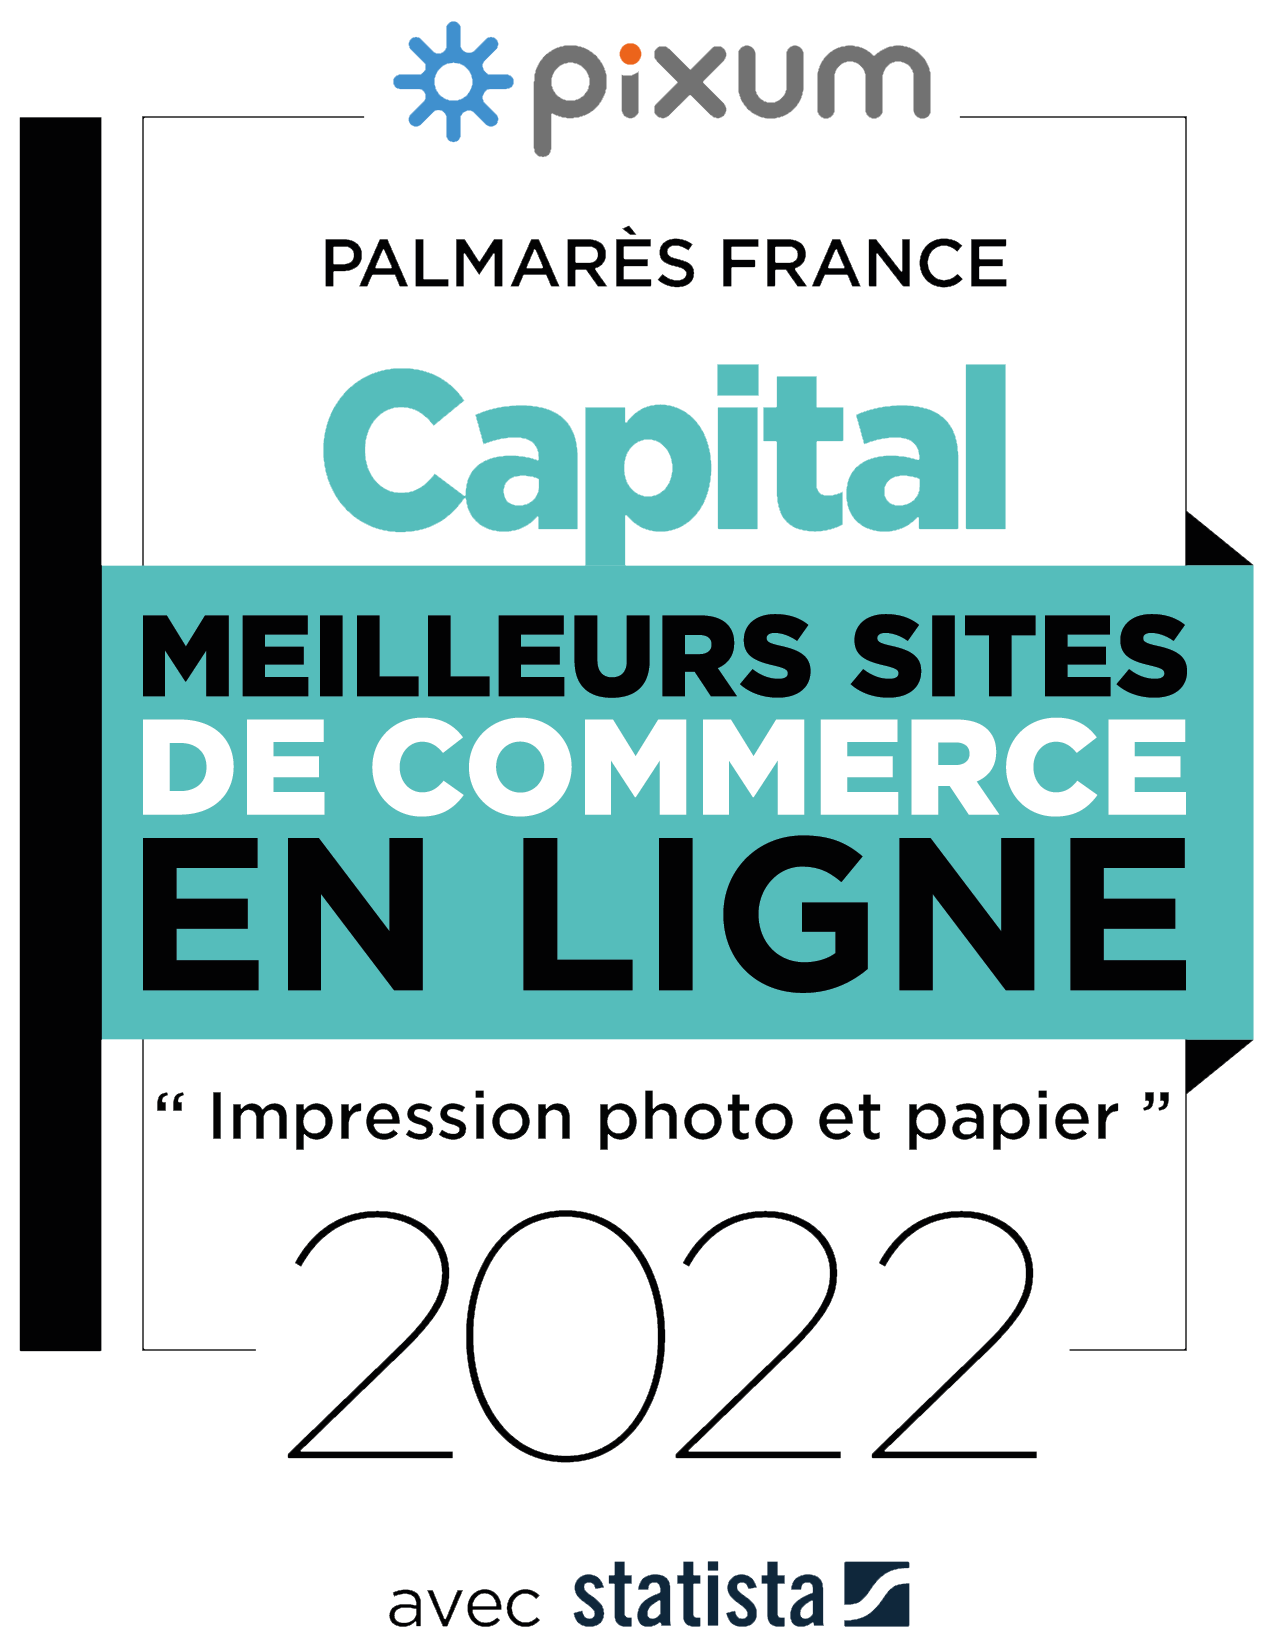 Pixum a été  élu meilleur site de e-commerce pour "l'impression photo & papier" en 2022